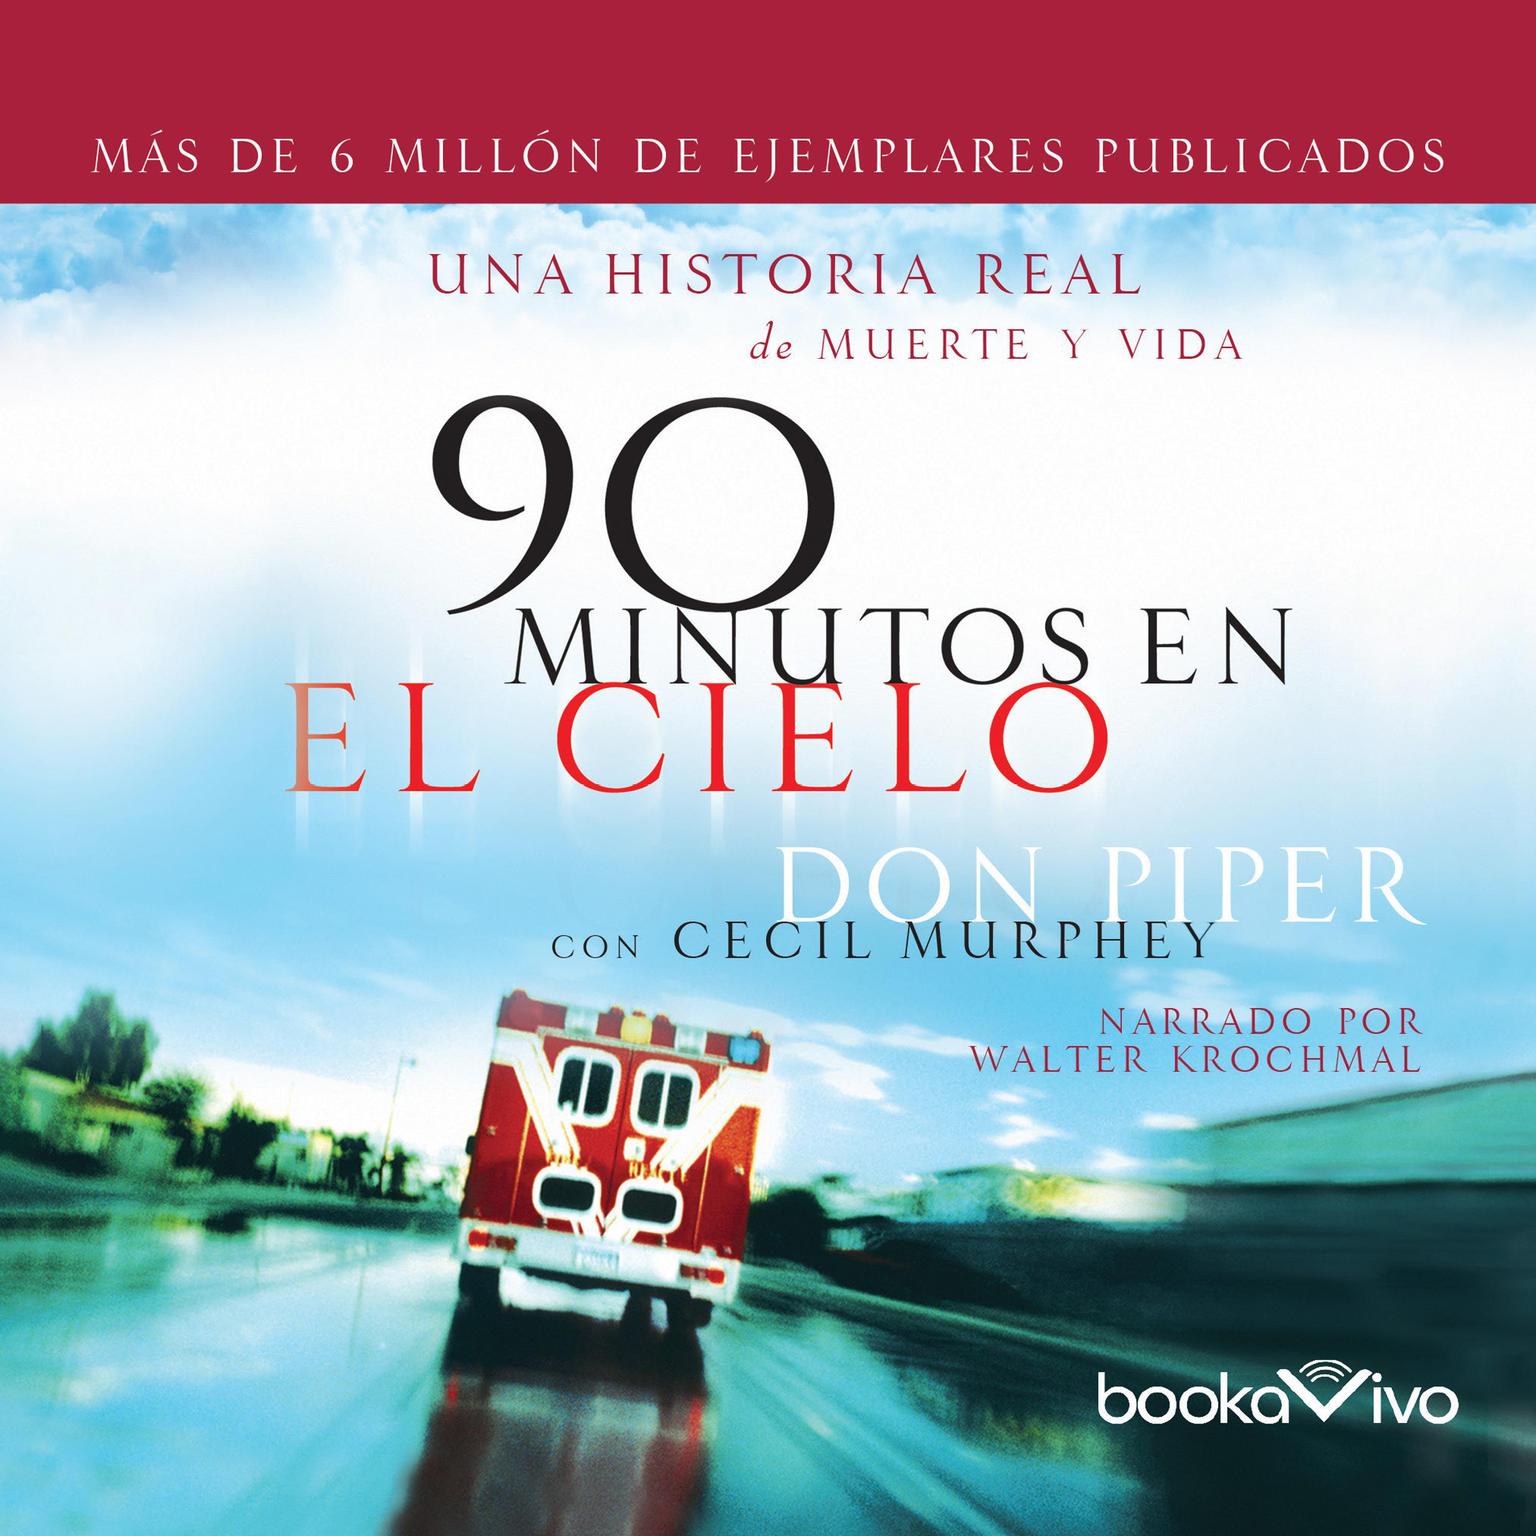 90 minutos en el cielo (90 Minutes in Heaven): Una historia real de Vida y Muerte (A True Story of Life and Death) Audiobook, by Don Piper